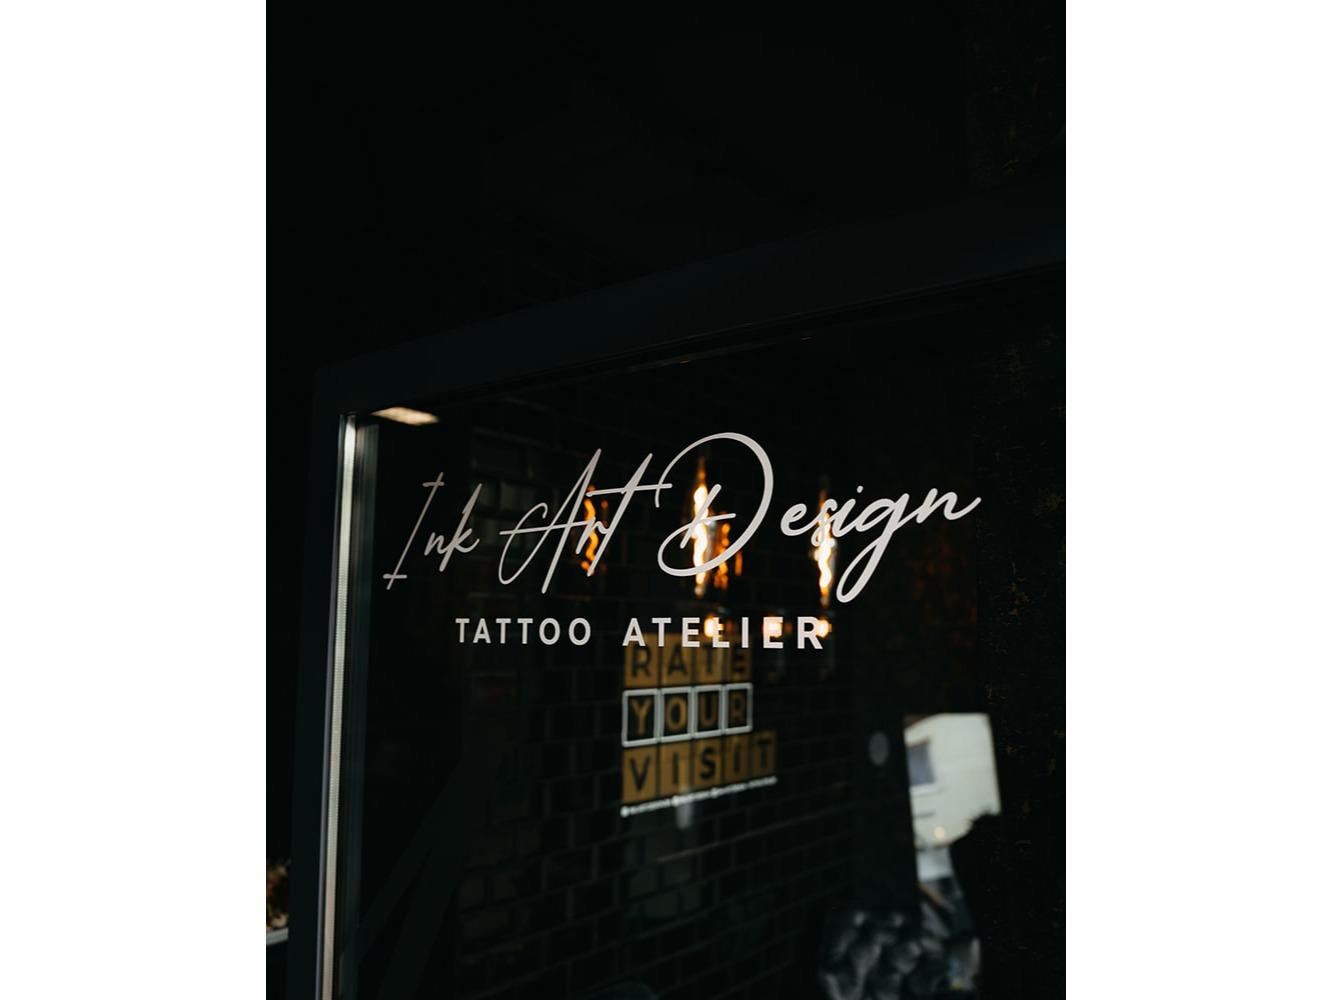 Bilder Ink Art Design - Tattoo Atelier